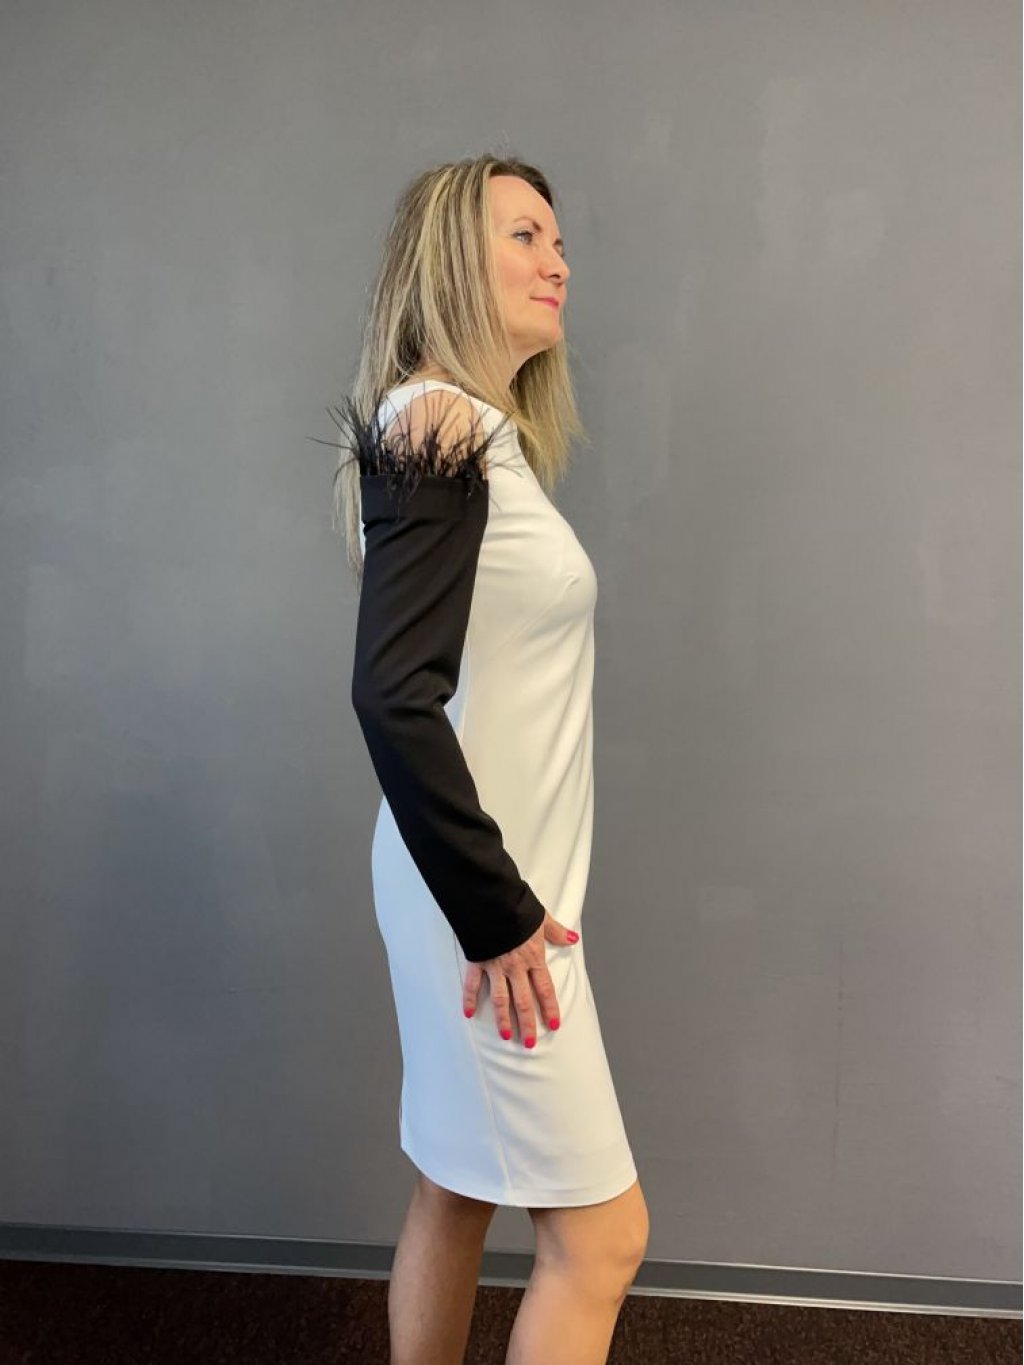 Šaty Estel 6113 černo bílé pouzdrové s peříčky